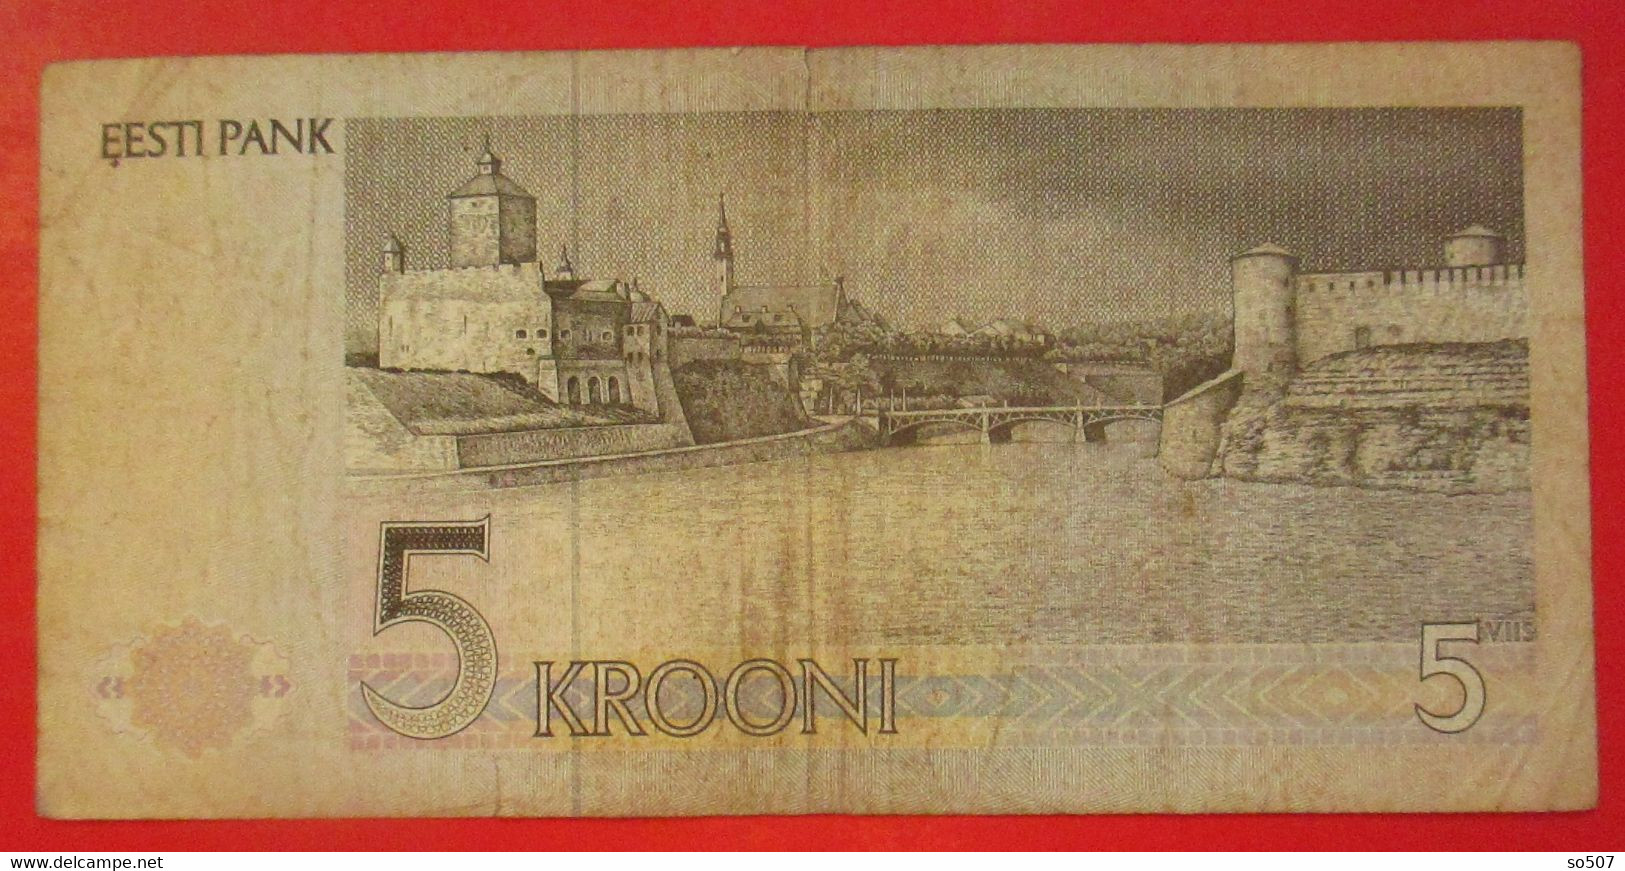 X1- 5 Krooni 1991. Estonia- Five Krooni, Chess Player Paul Keres Grandmaster, Circulated Banknote - Estonia